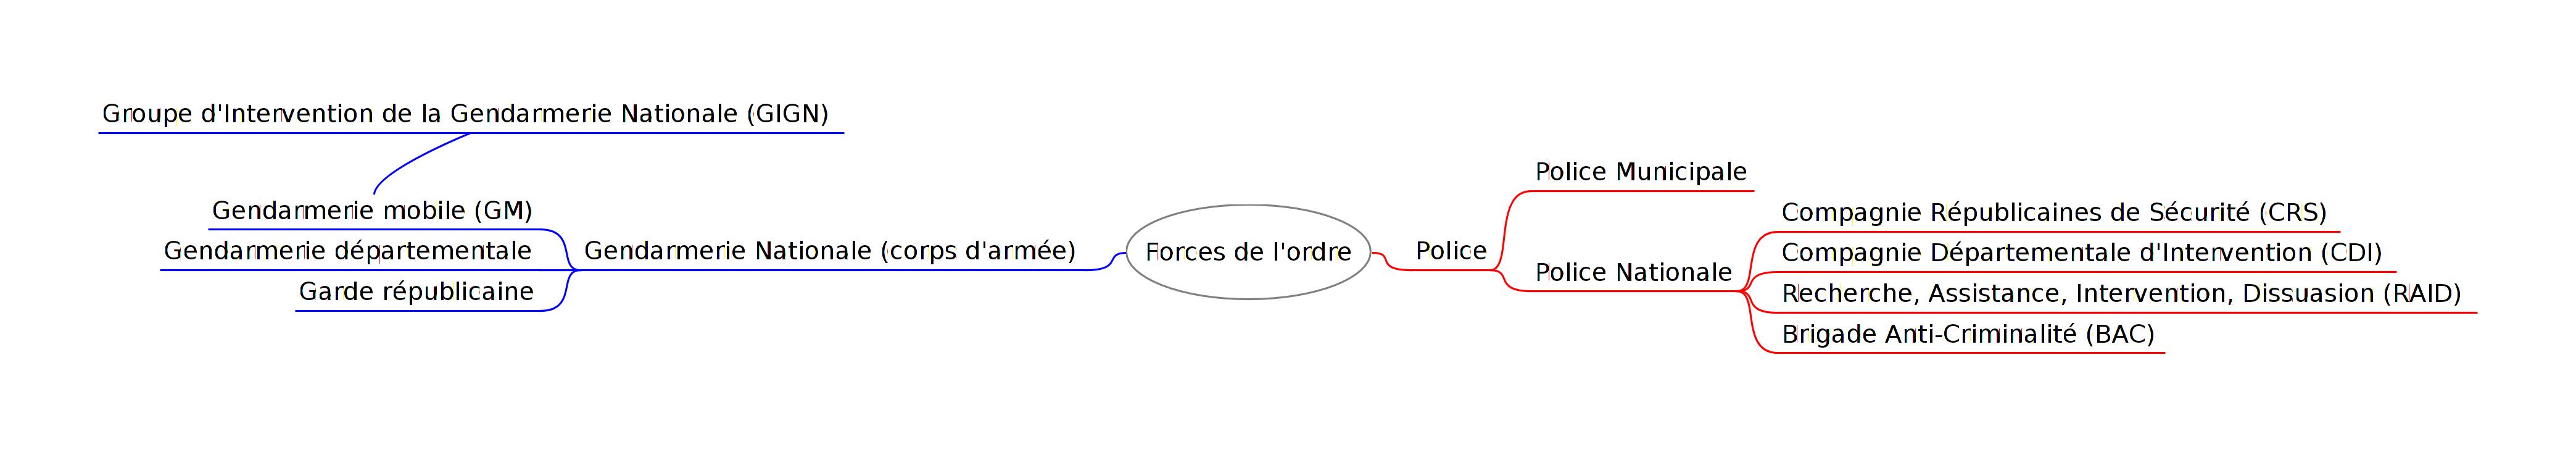 Schéma d'organisation des forces de l'ordre.